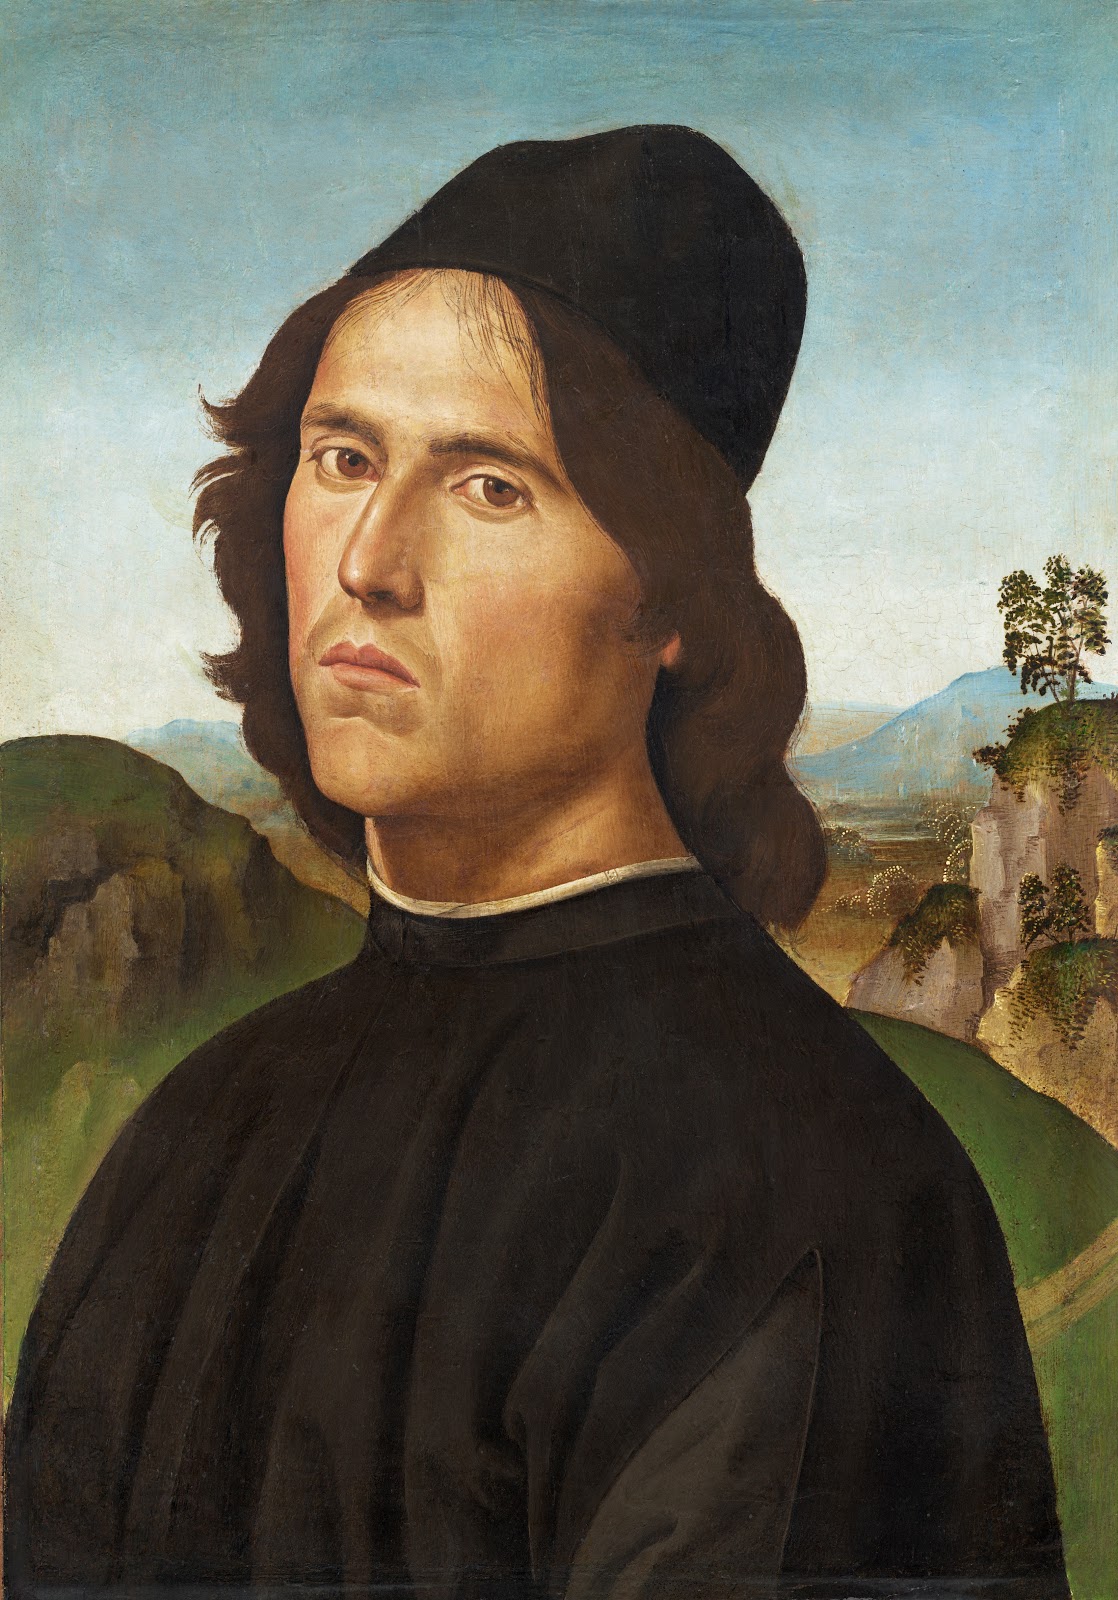 Pietro+Perugino-1450-1523 (18).jpg